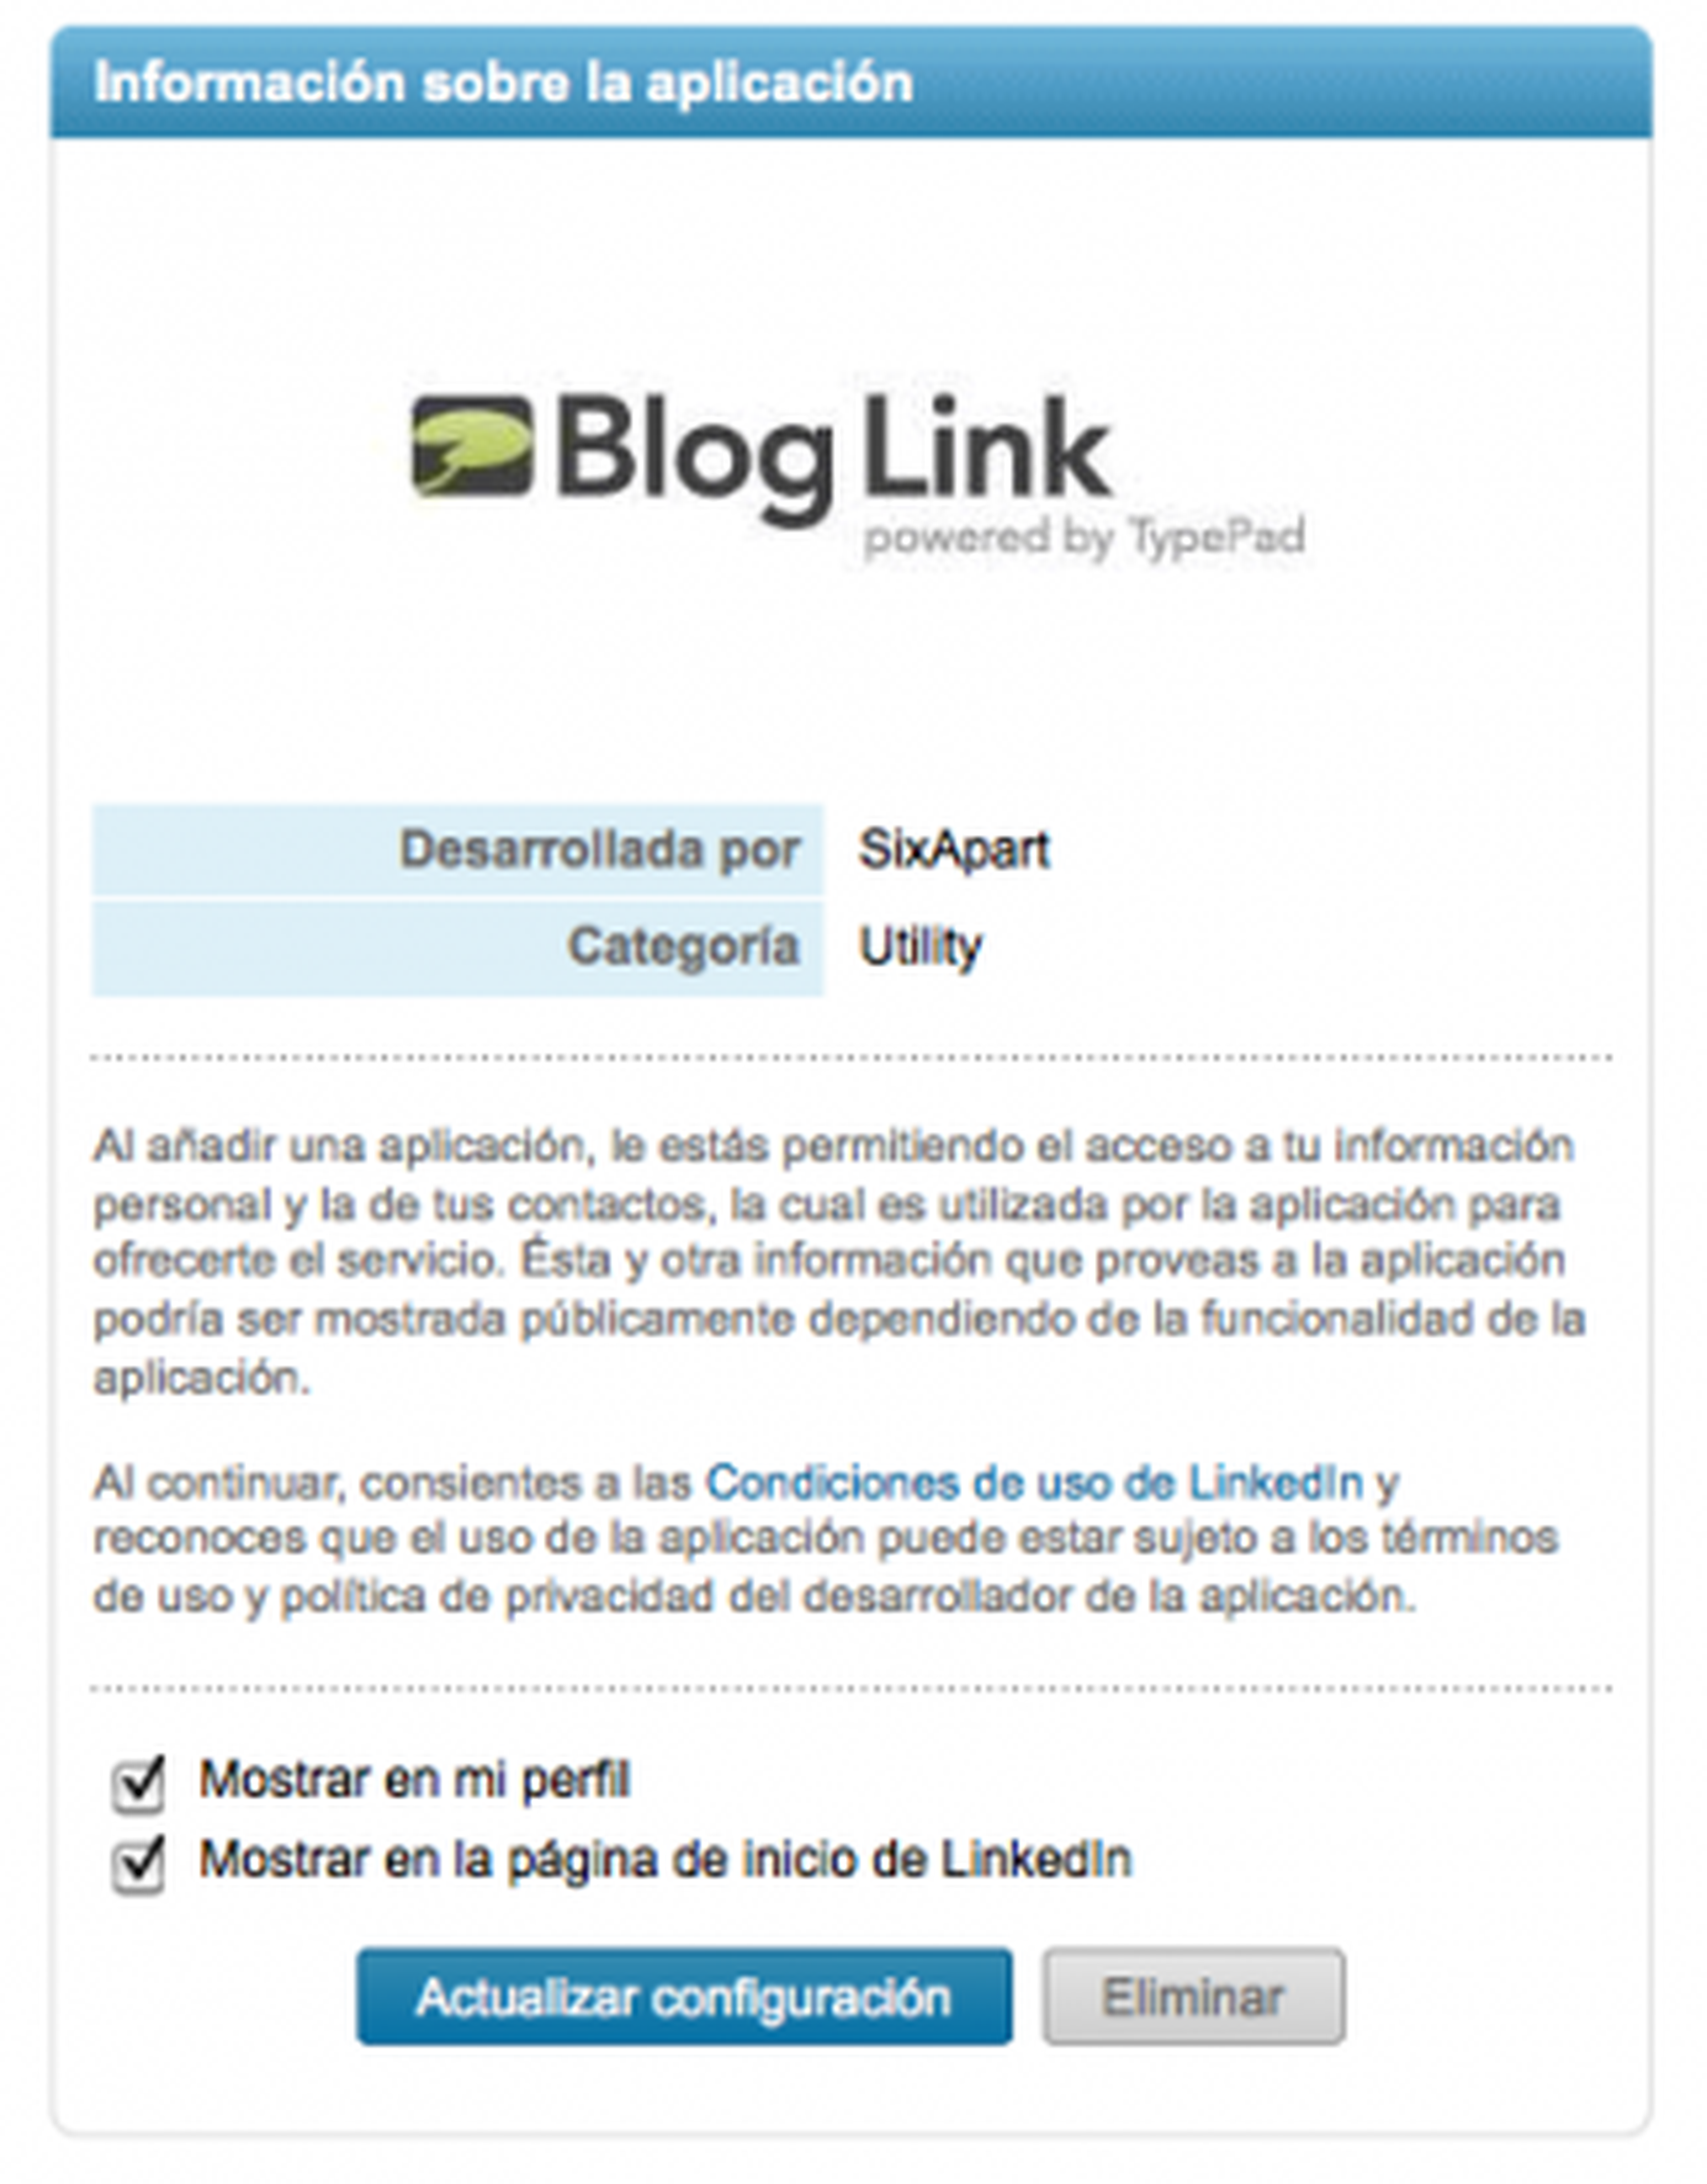 Promociona tu blog o web en LinkedIn